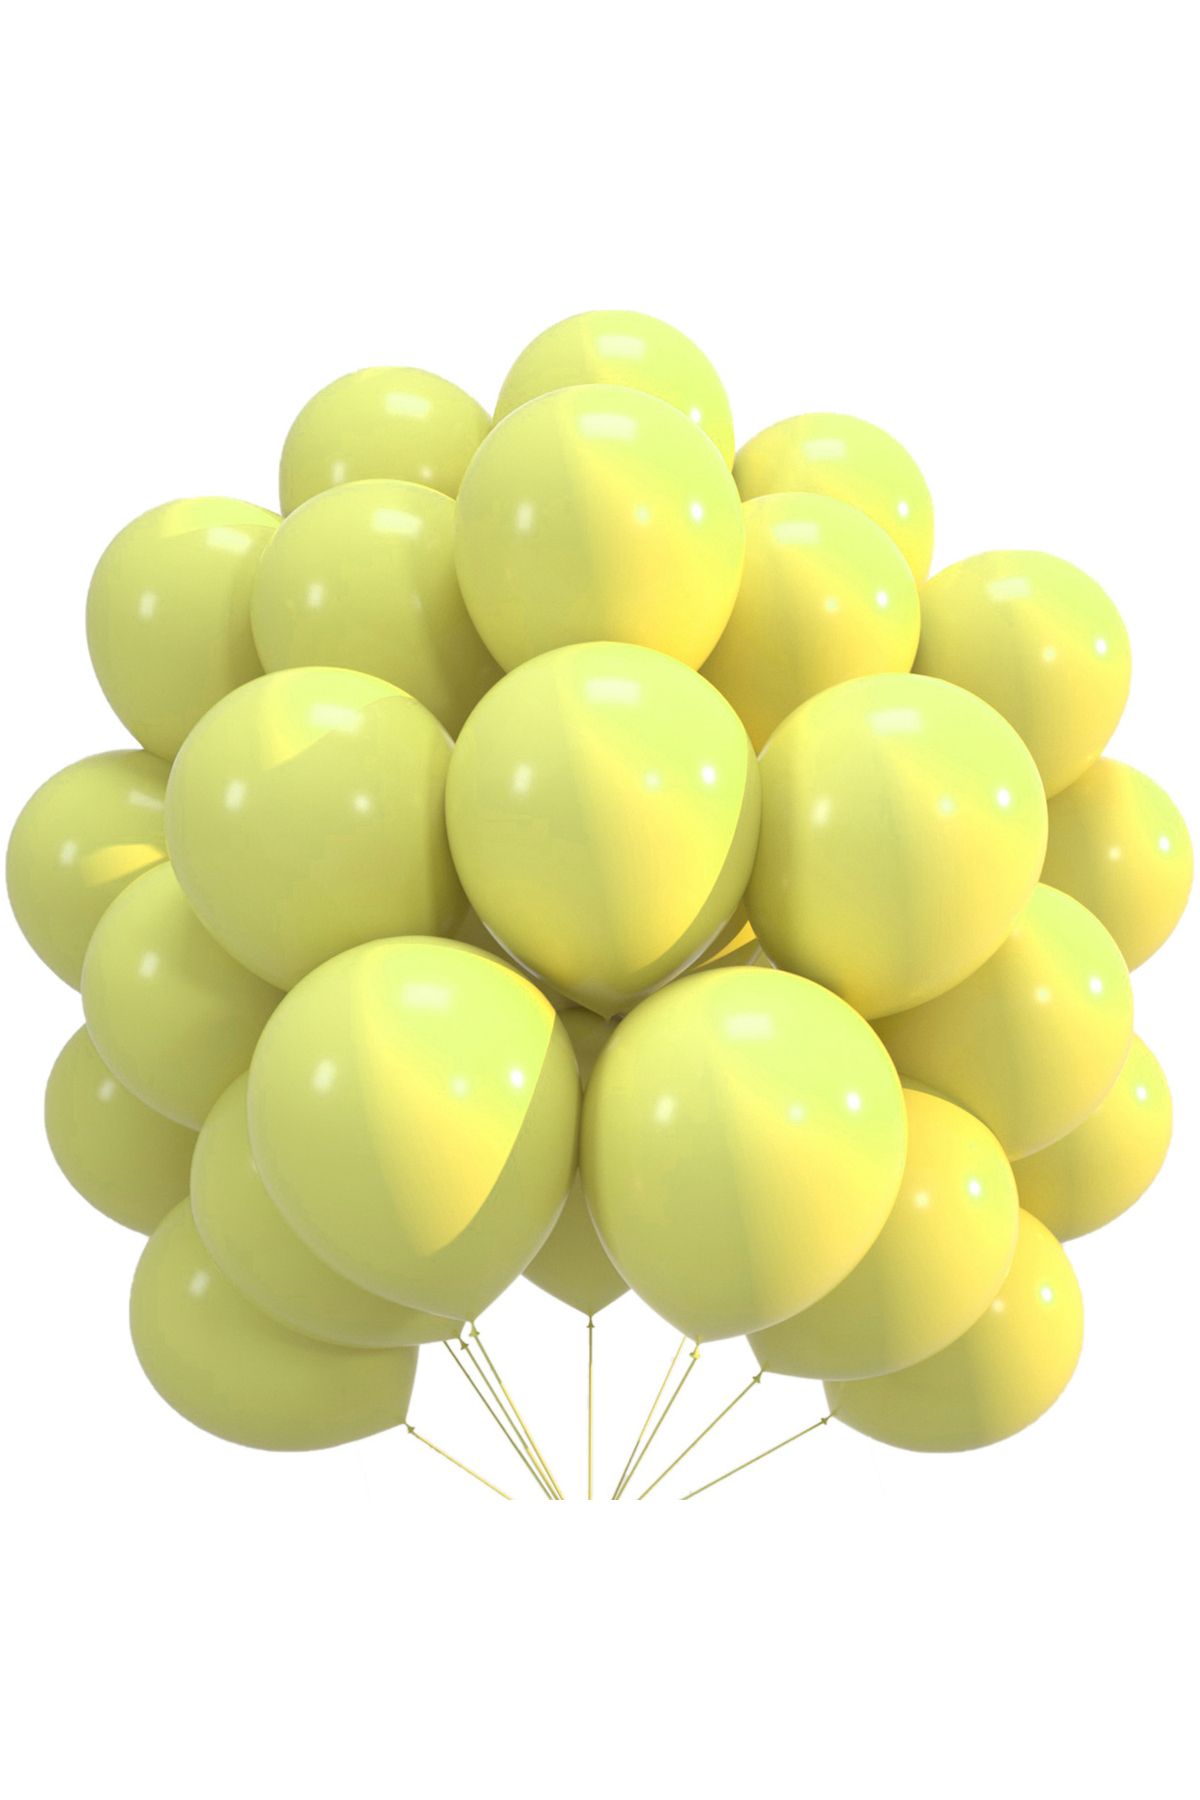 pazariz Lateks Balon Parti Organizasyon Balonu 14/A düğün doğum günü dekorasyon 30 Adet